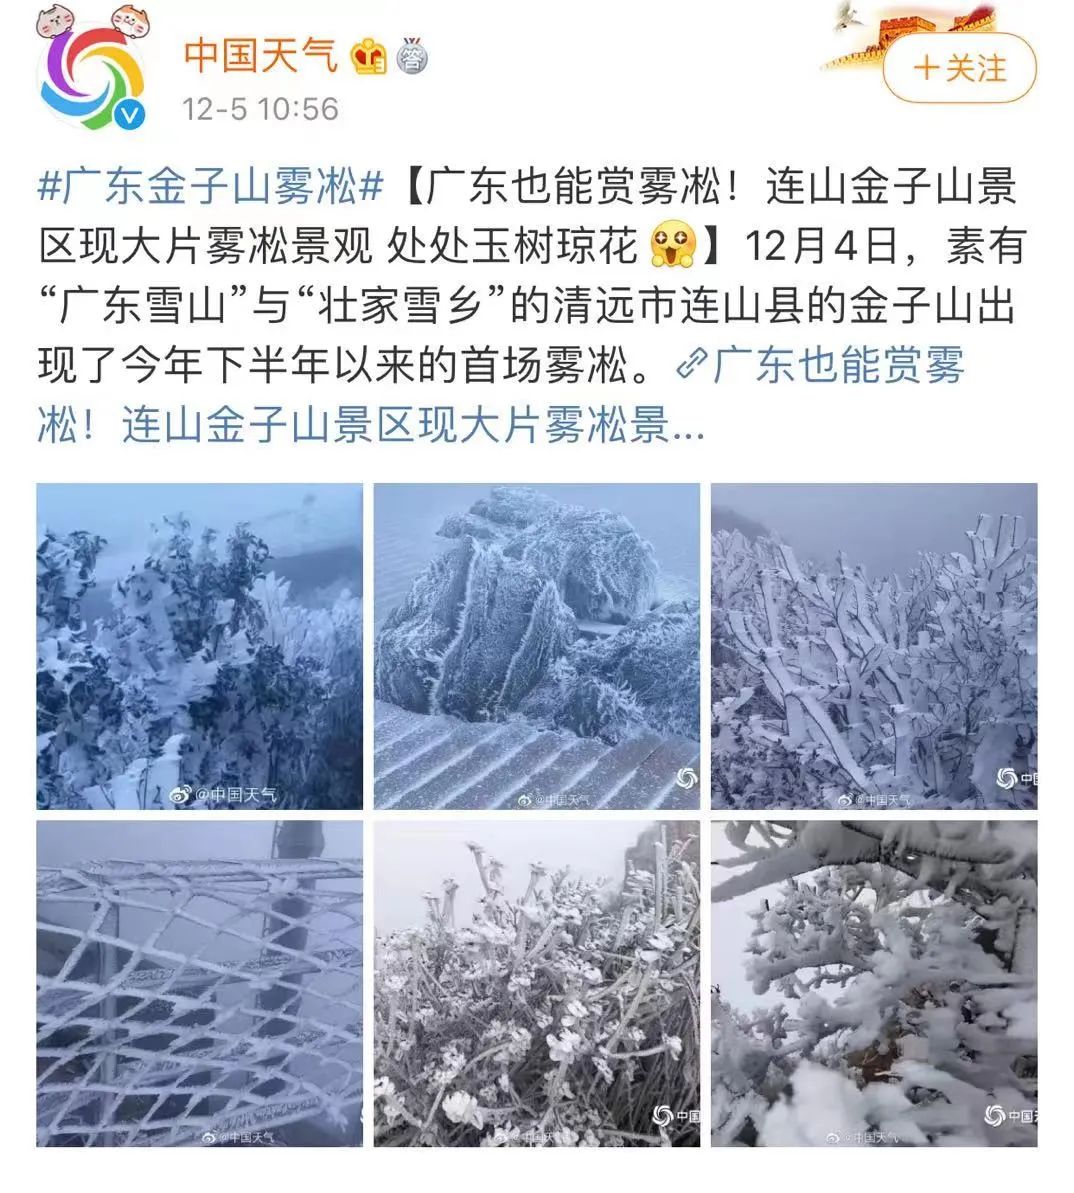 广东下雪了 真美 今年最冷已来 接下来 新浪新闻